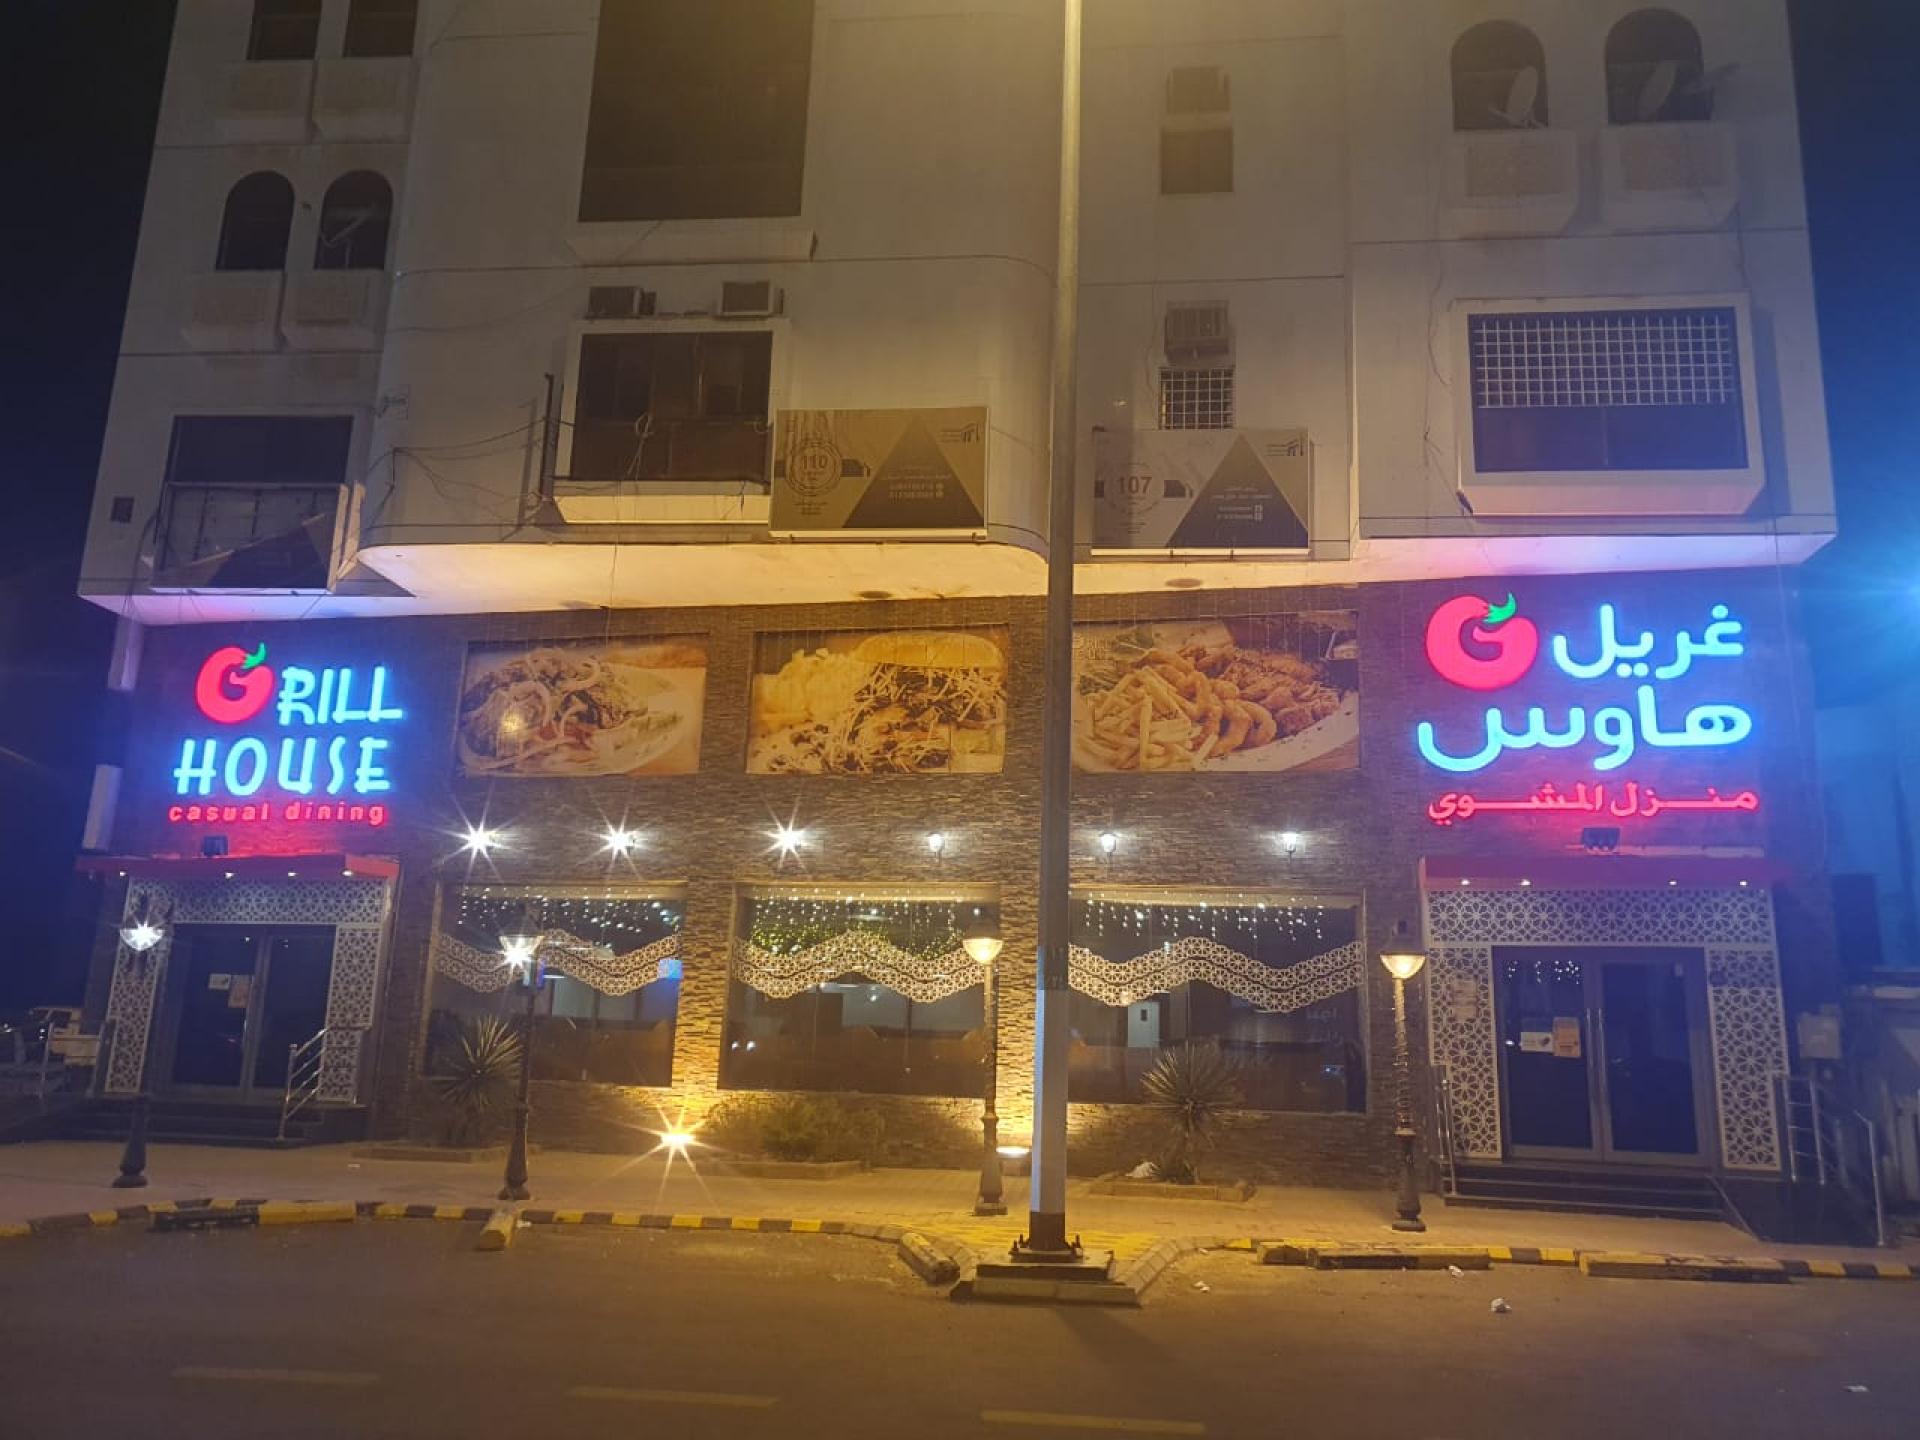 væg lindre fordøje Grill House Casual Dining Restaurant - Makkah Restaurant - Makkah - Welcome  Saudi